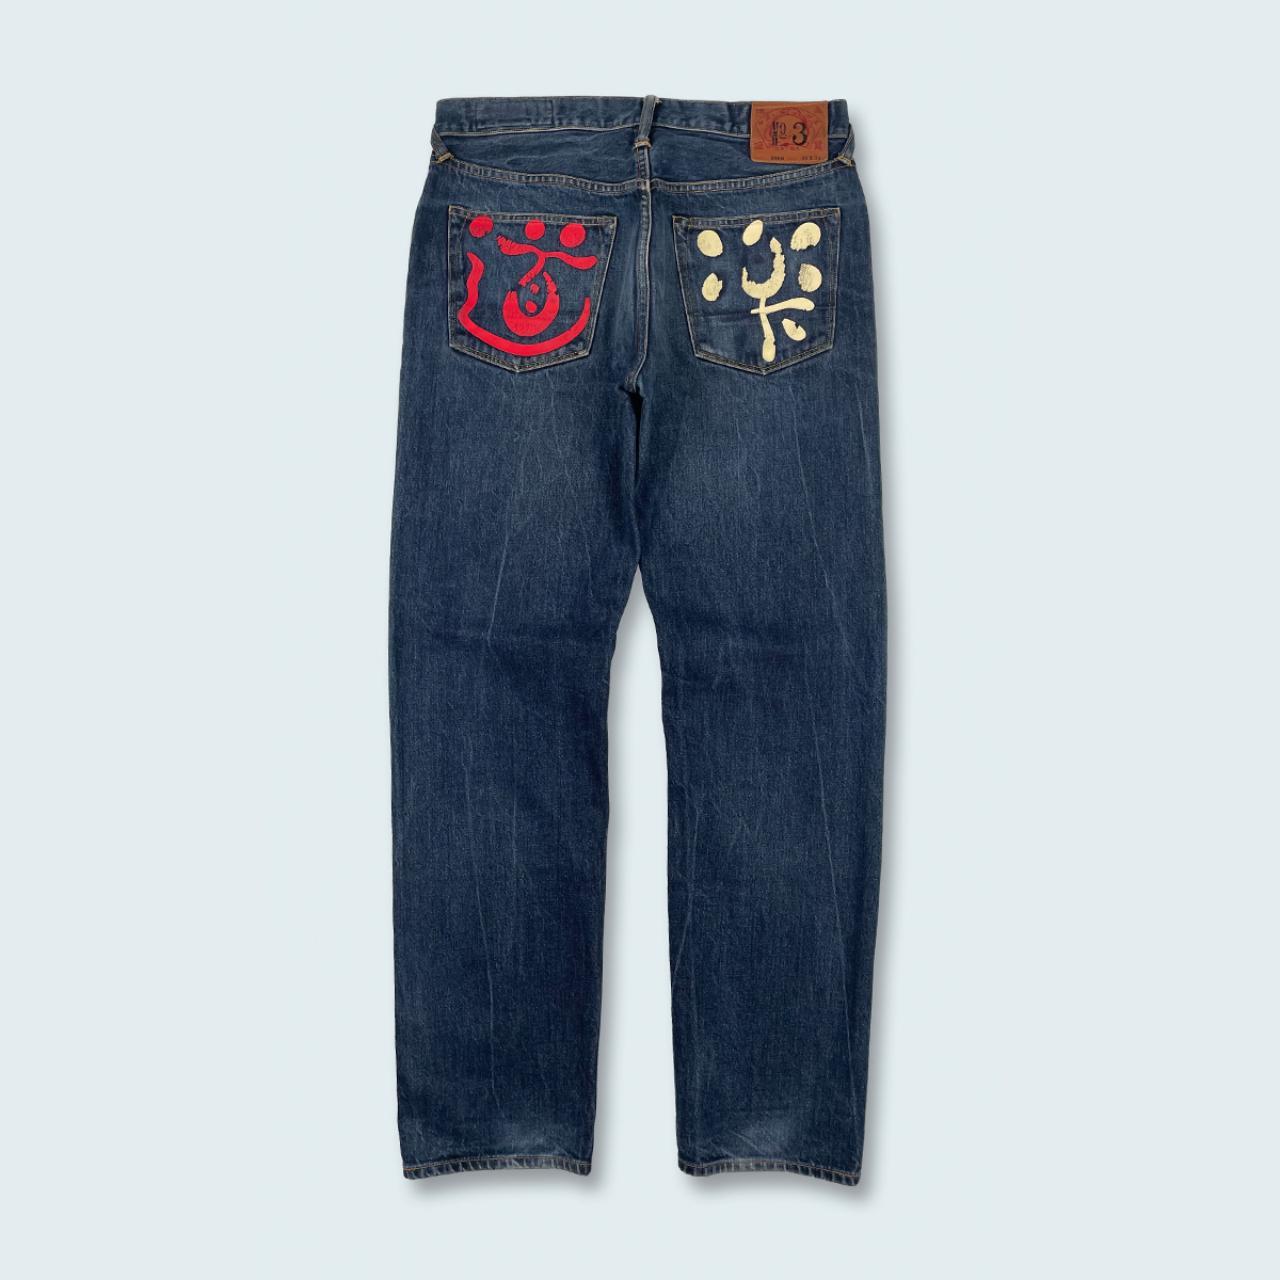 Authentic Vintage Evisu Jeans  (32")